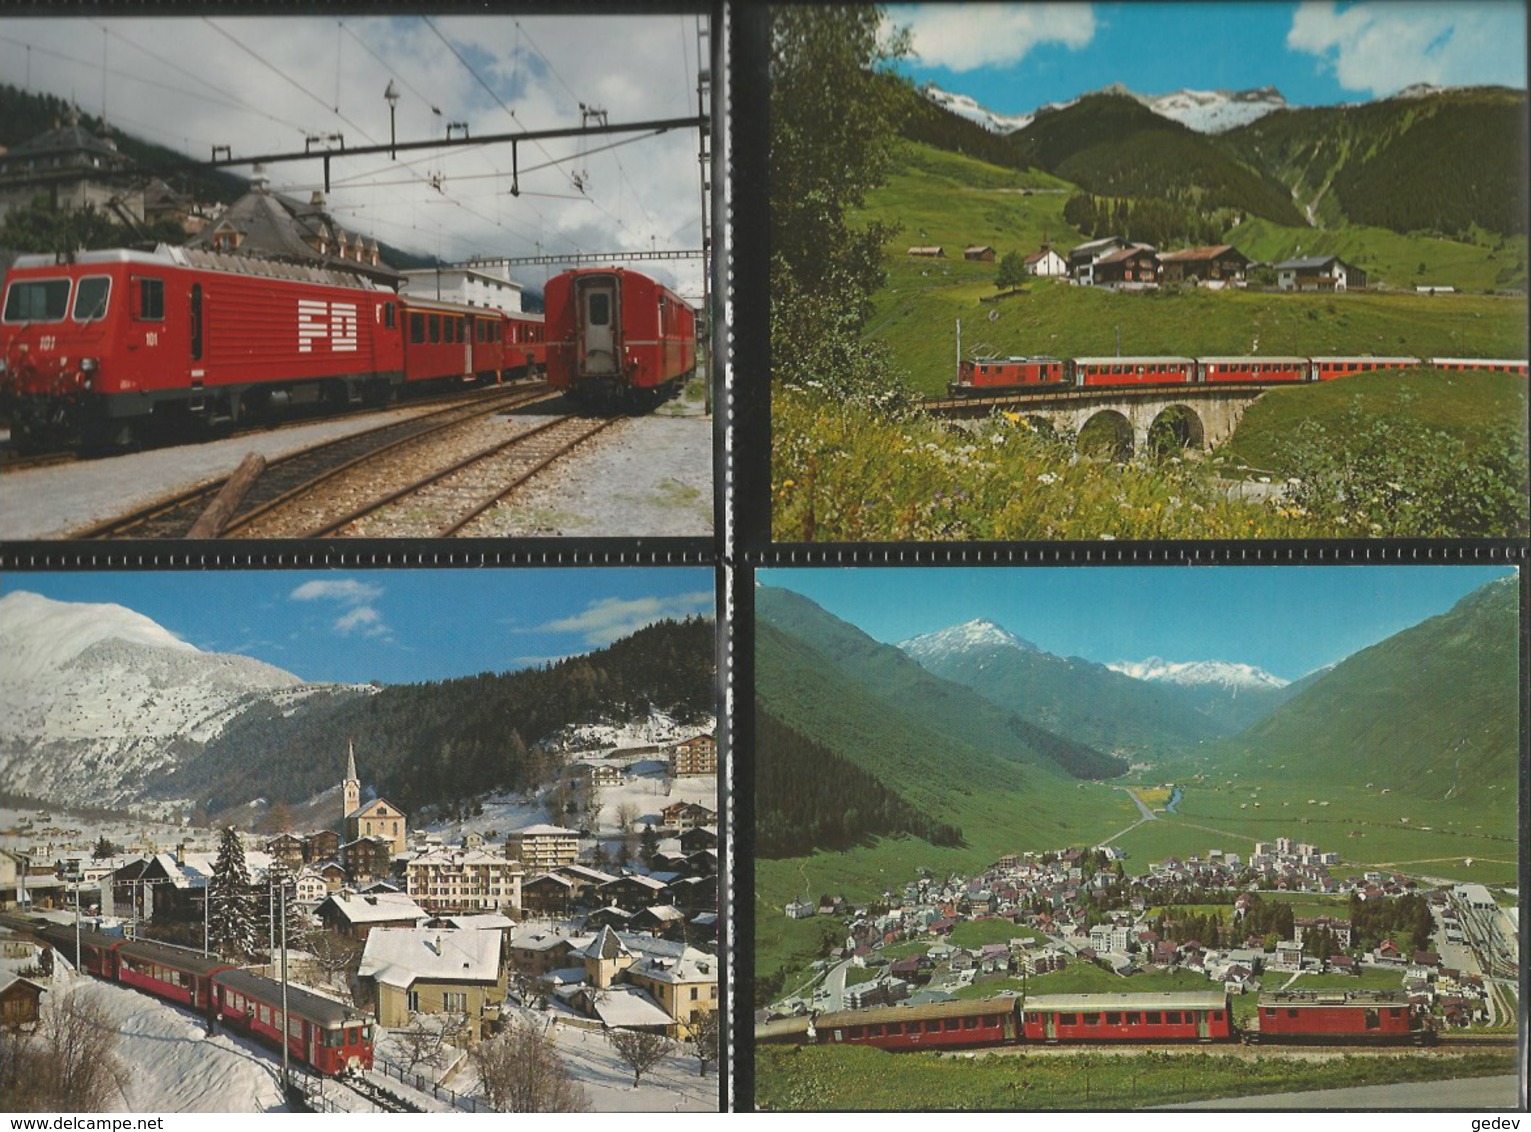 Chemin de Fer Zermatt - St Moritz, Furka-Oberalp-Bahn, Lot de 96 cartes couleurs modernes (3)